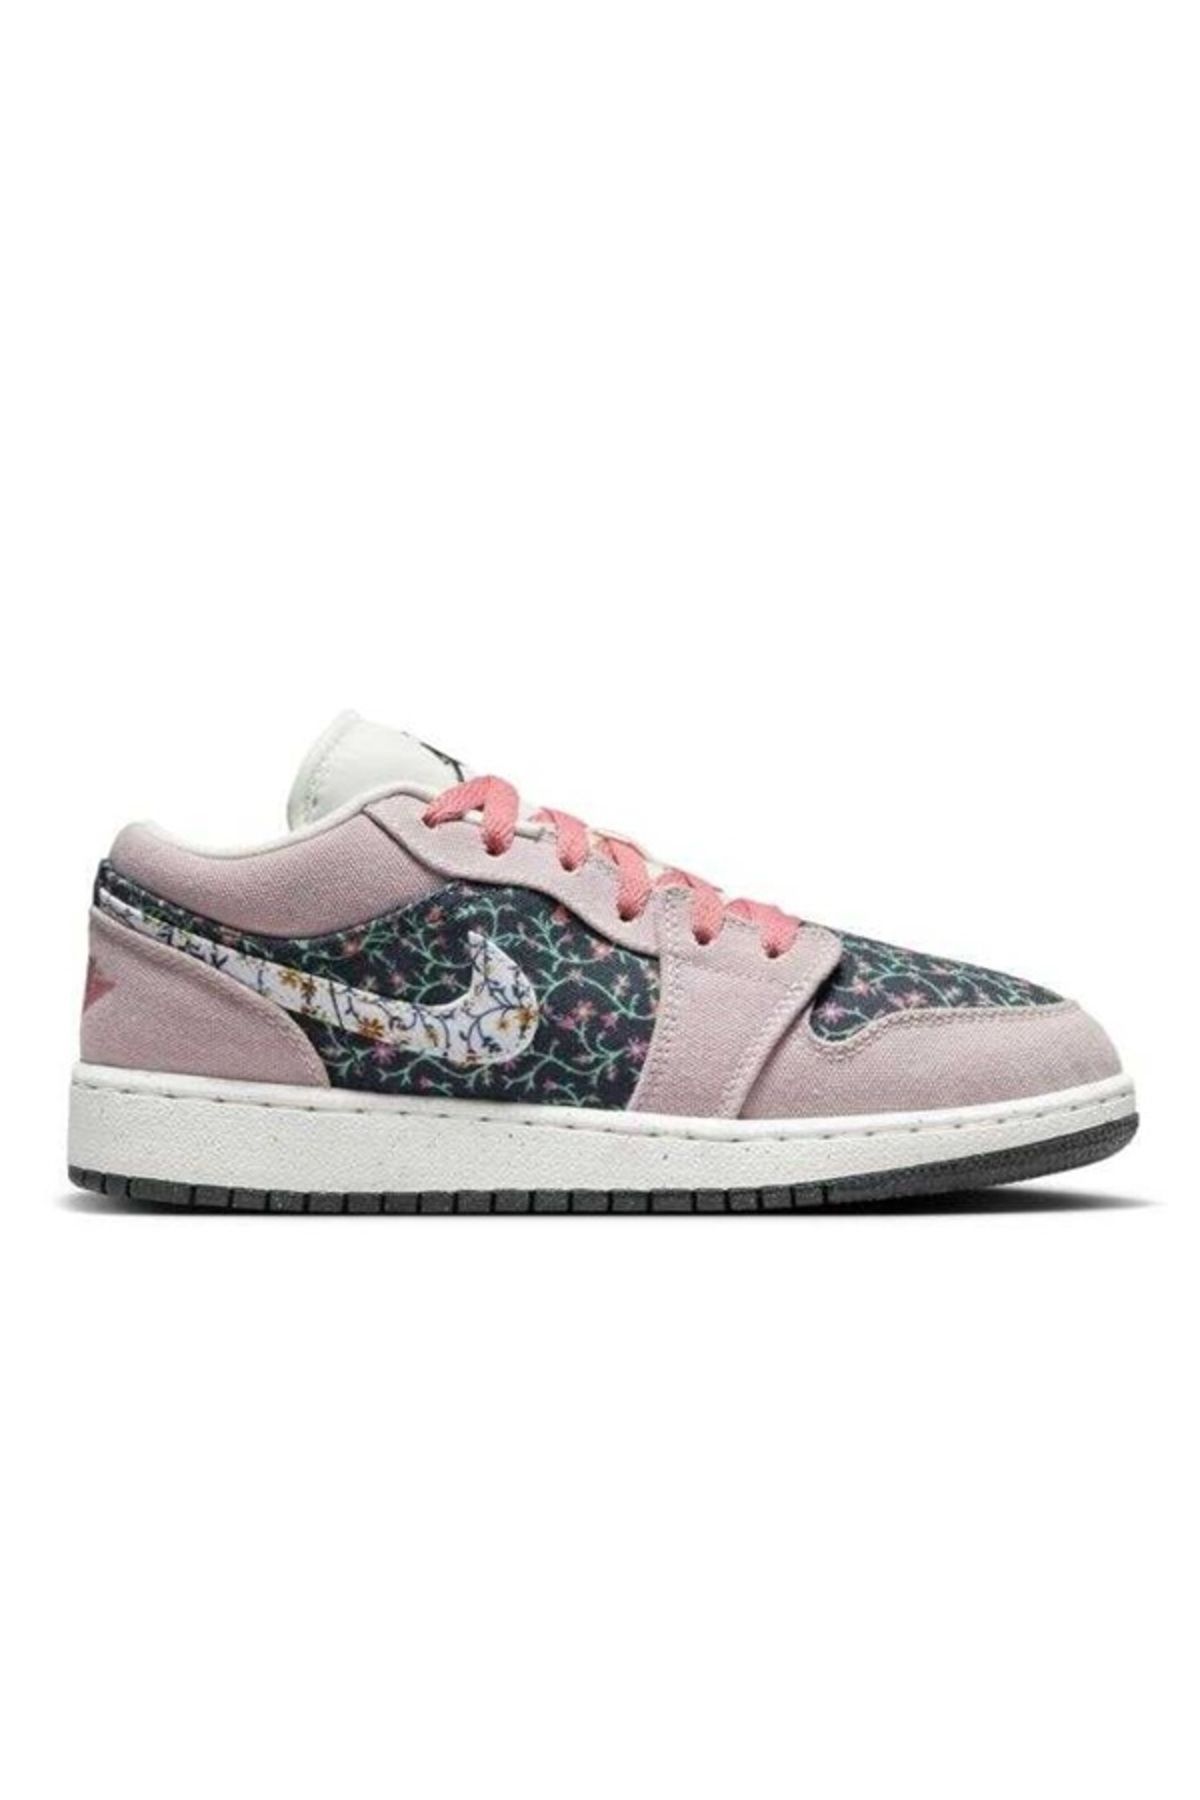 Nike Air Jordan 1 Low SE Gs Floral Canvas Kadın Sneaker Ayakkabı